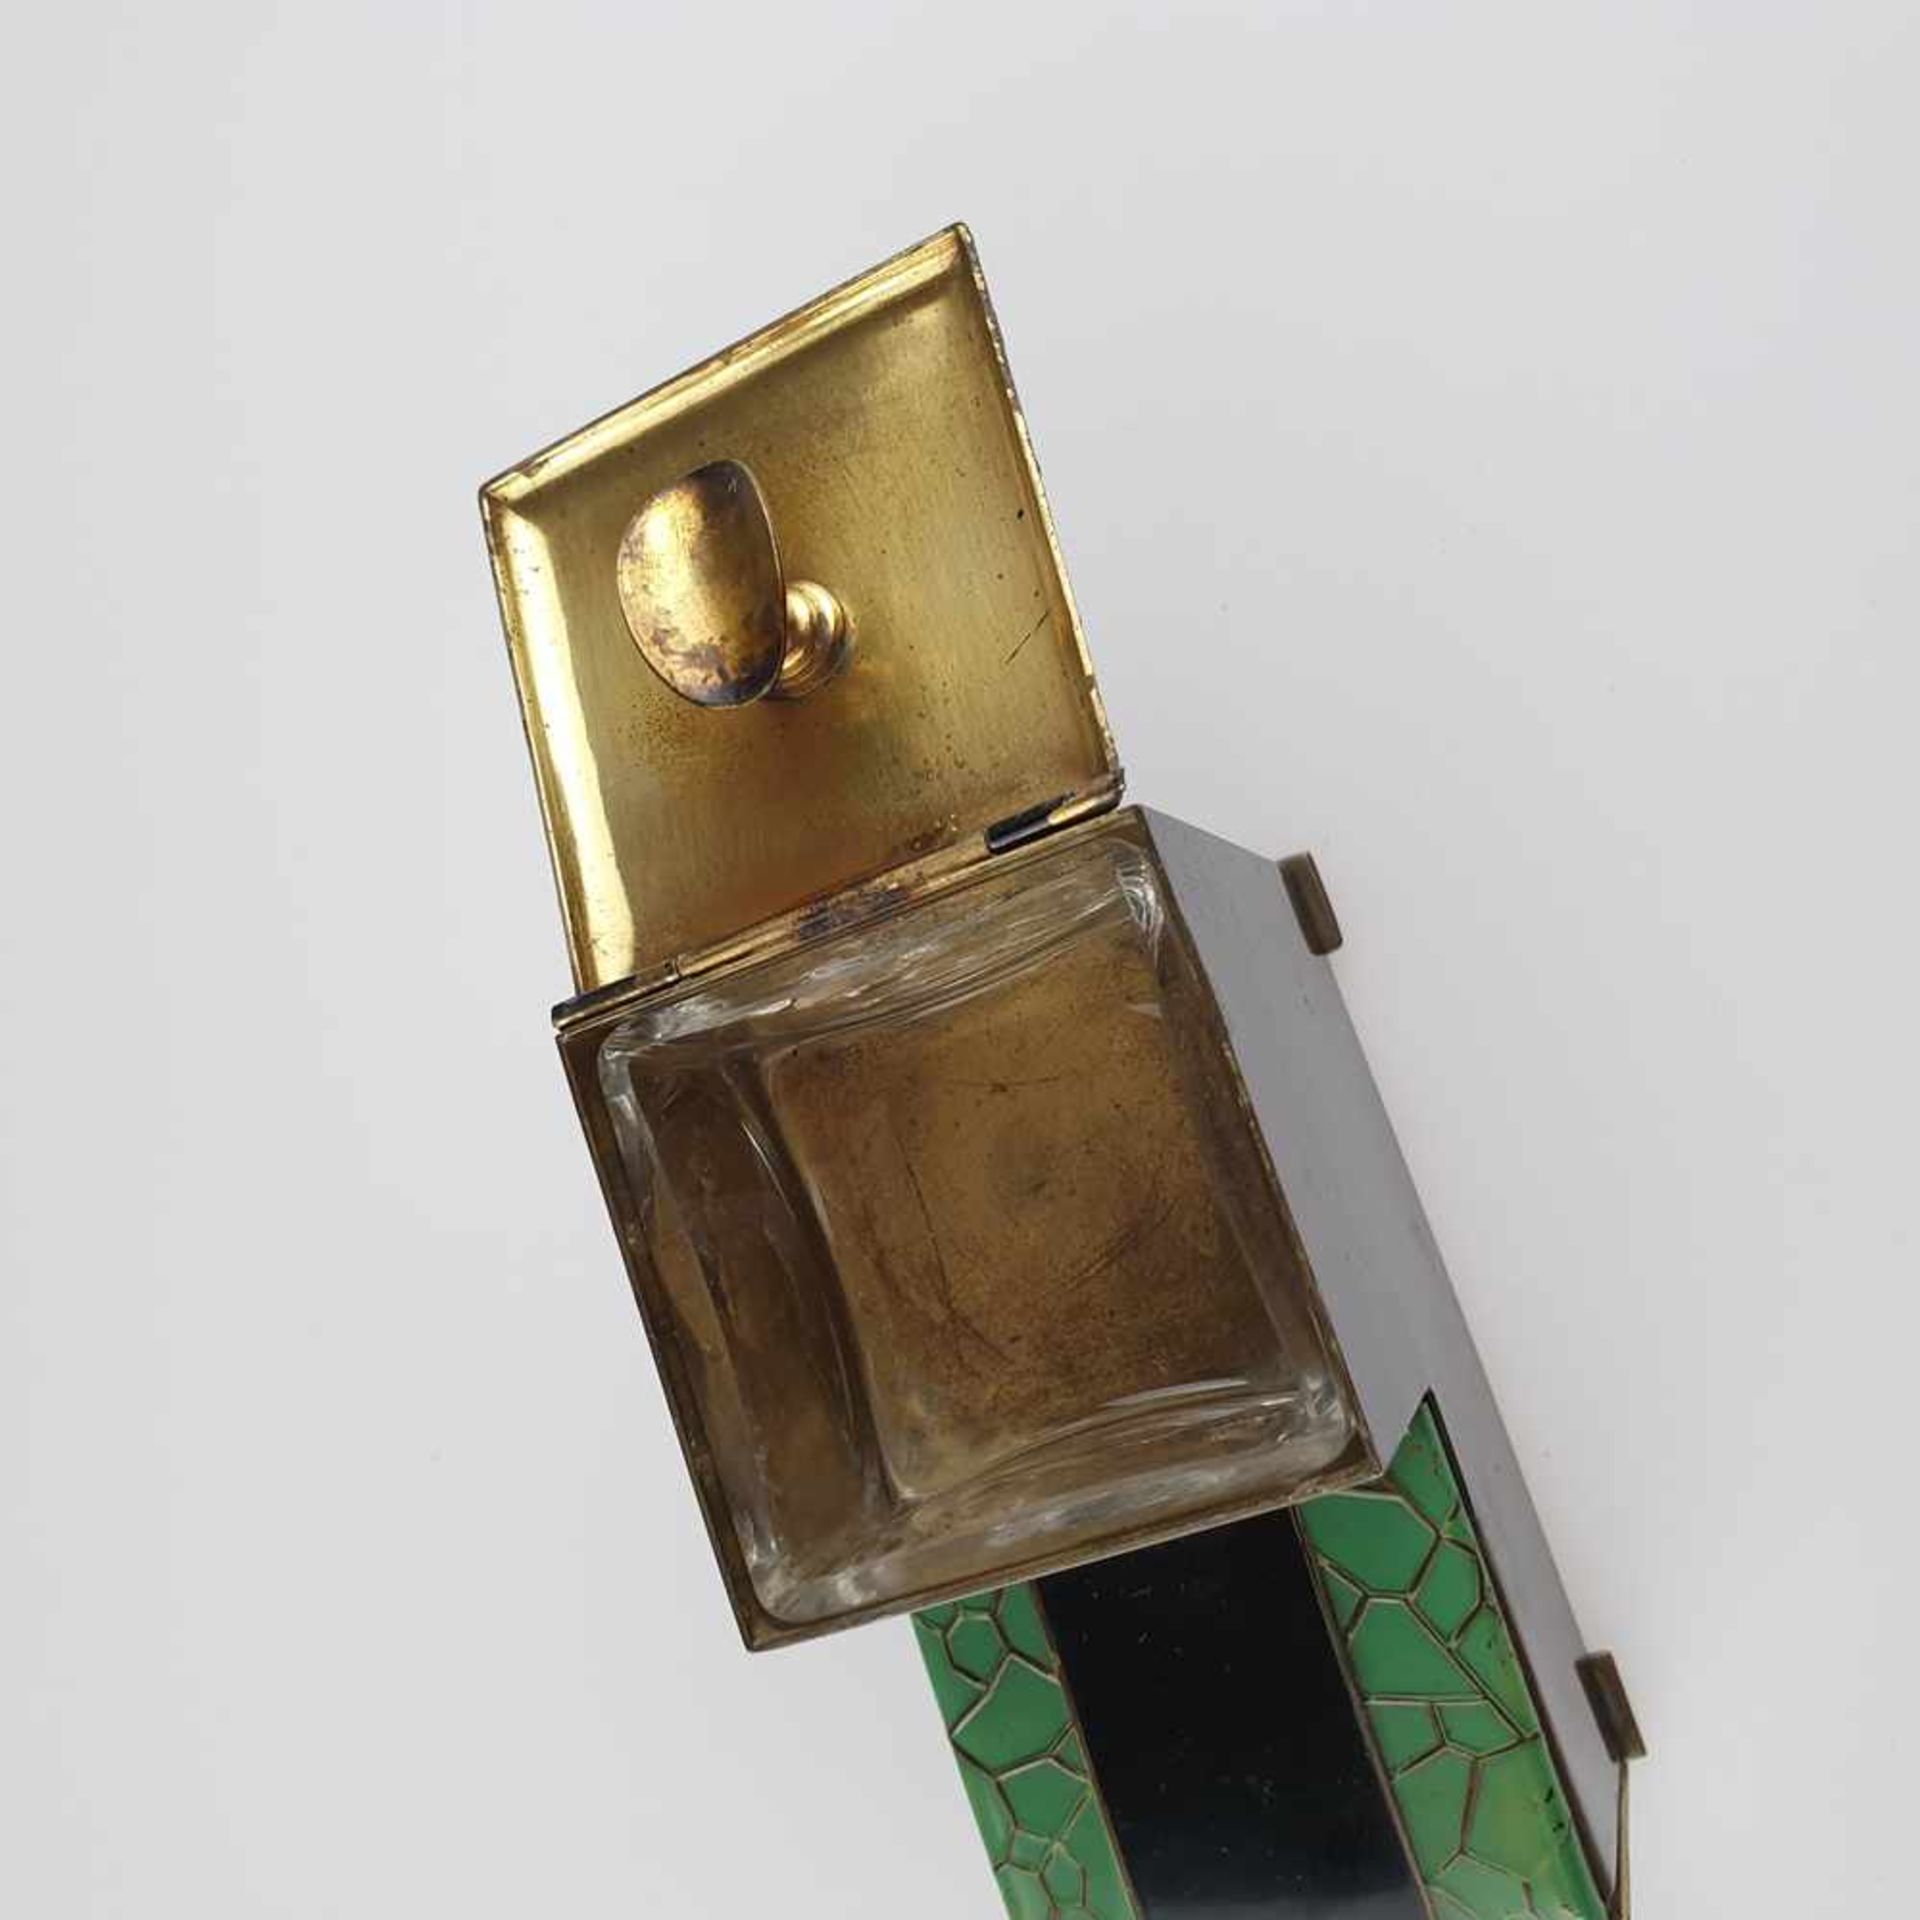 Raucher-Set - Blechgehäuse auf vier Plattfüßen, schwarz/grün lackiert, oben mit Glaseinsatz, unten - Bild 4 aus 9